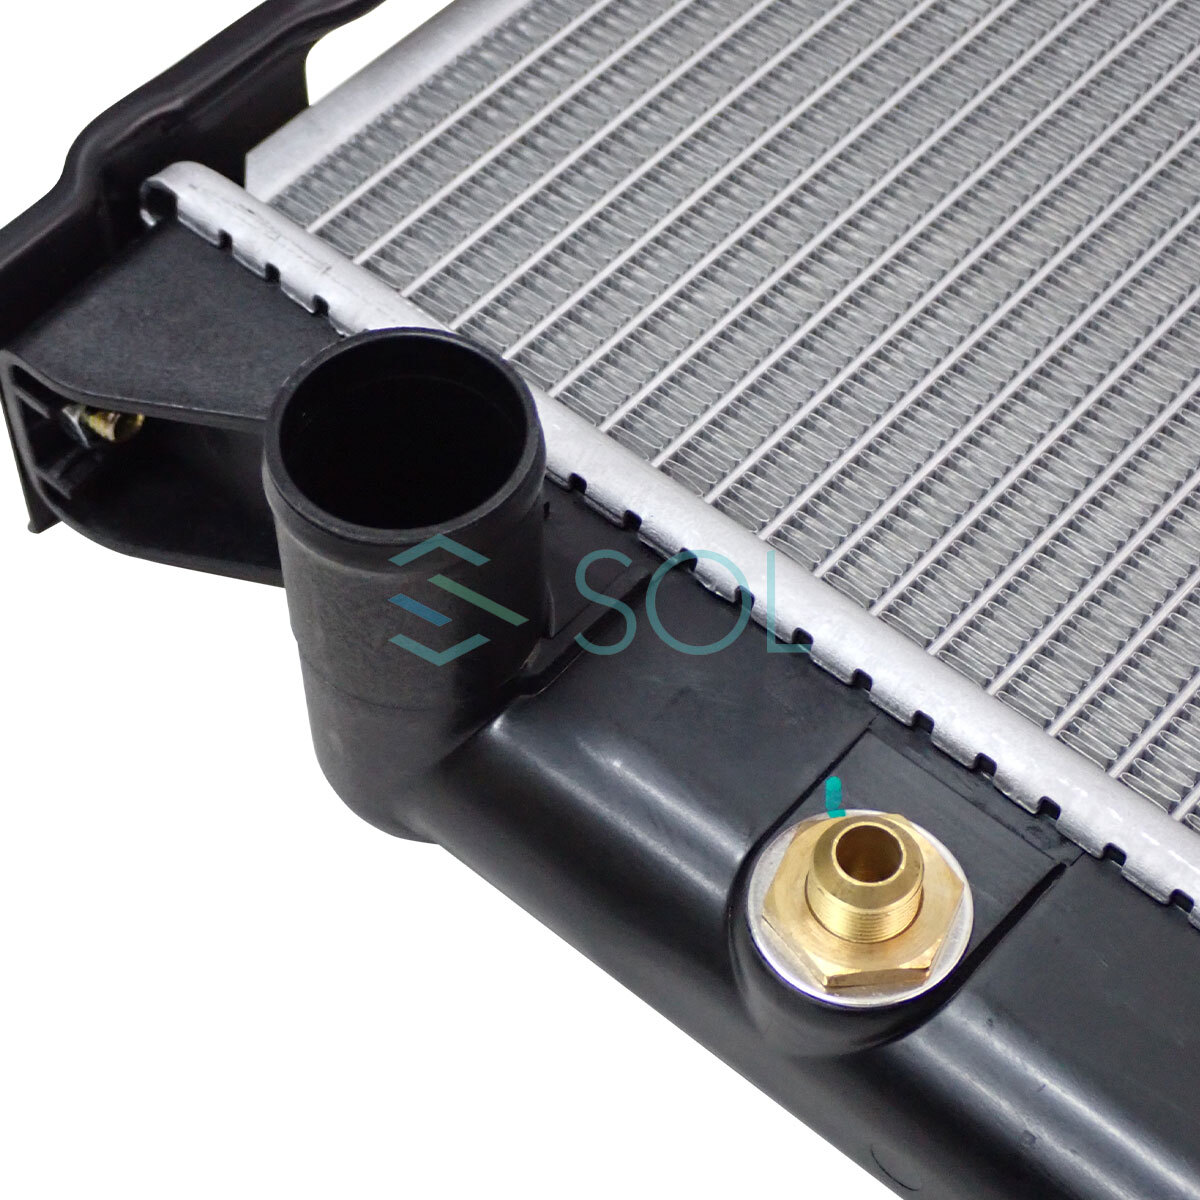  Hilux Surf VZN185W радиатор крышка радиатора есть AT машина 16400-75190 16400-75191 16400-75180 18 часов до в тот же день отгрузка 